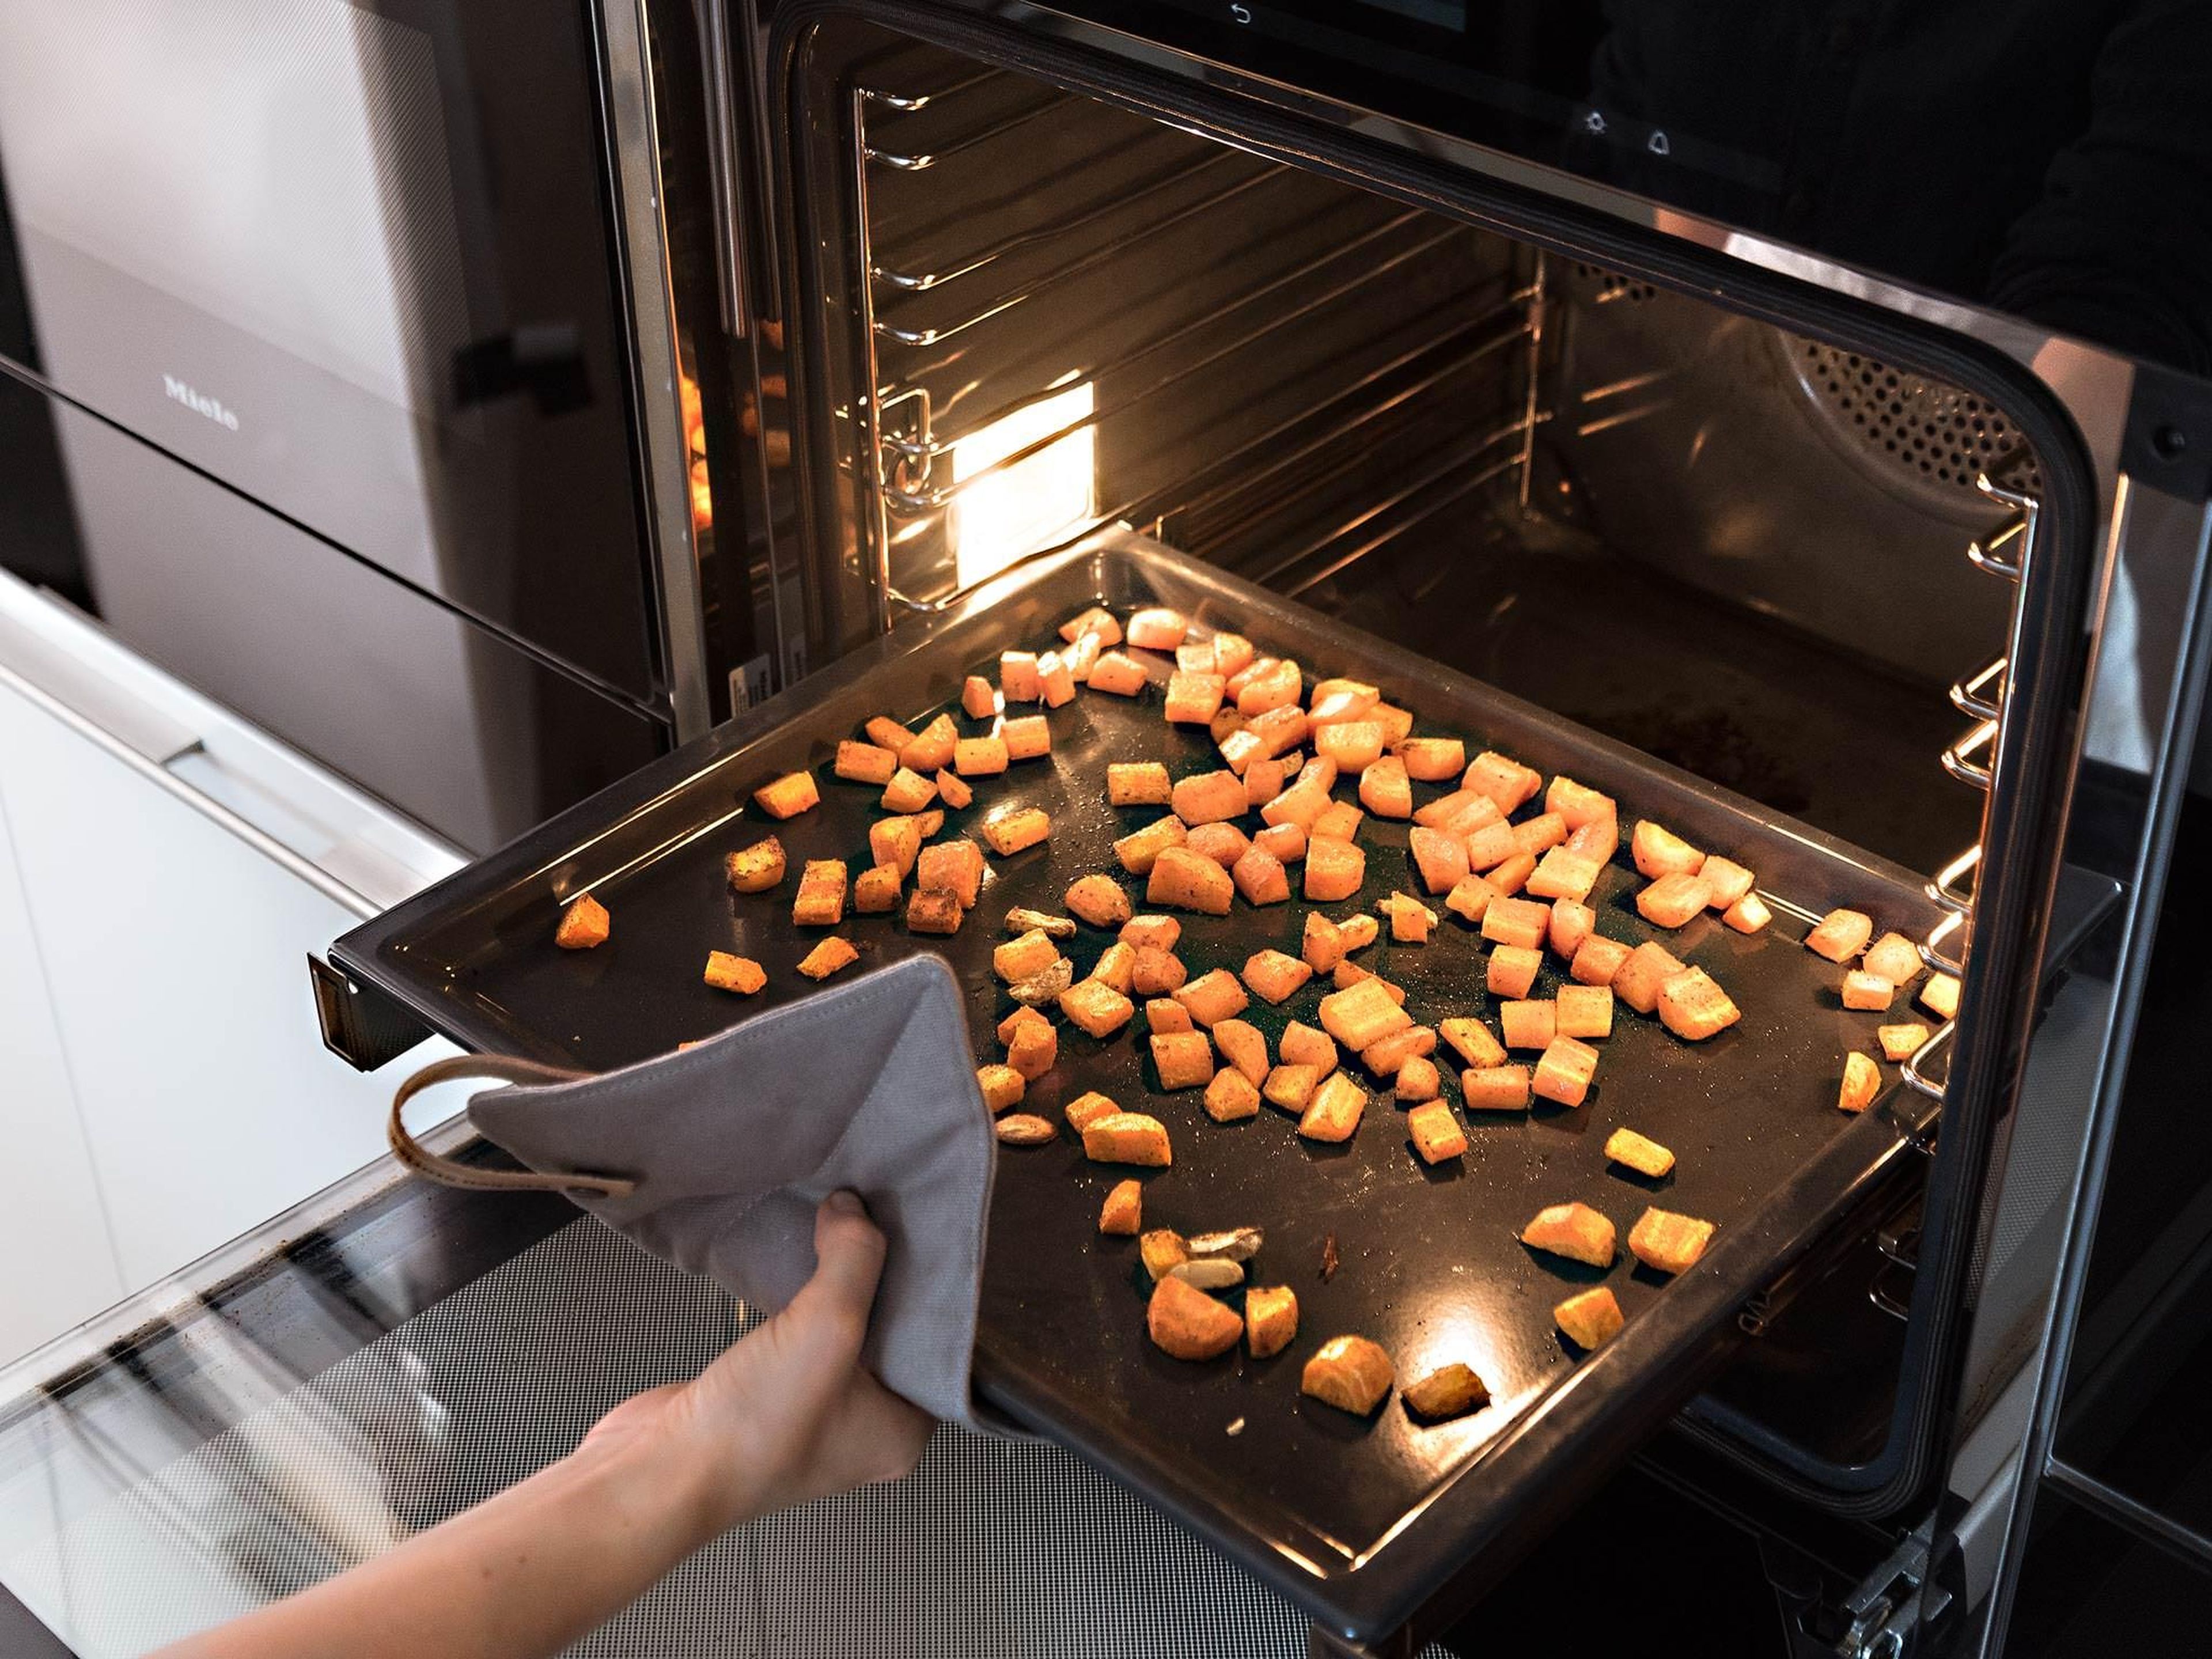 Karottenmischung auf dem vorbereiteten Backblech verteilen und bei 200°C ca. 20 Min. garen, bis die Karotten weich sind.